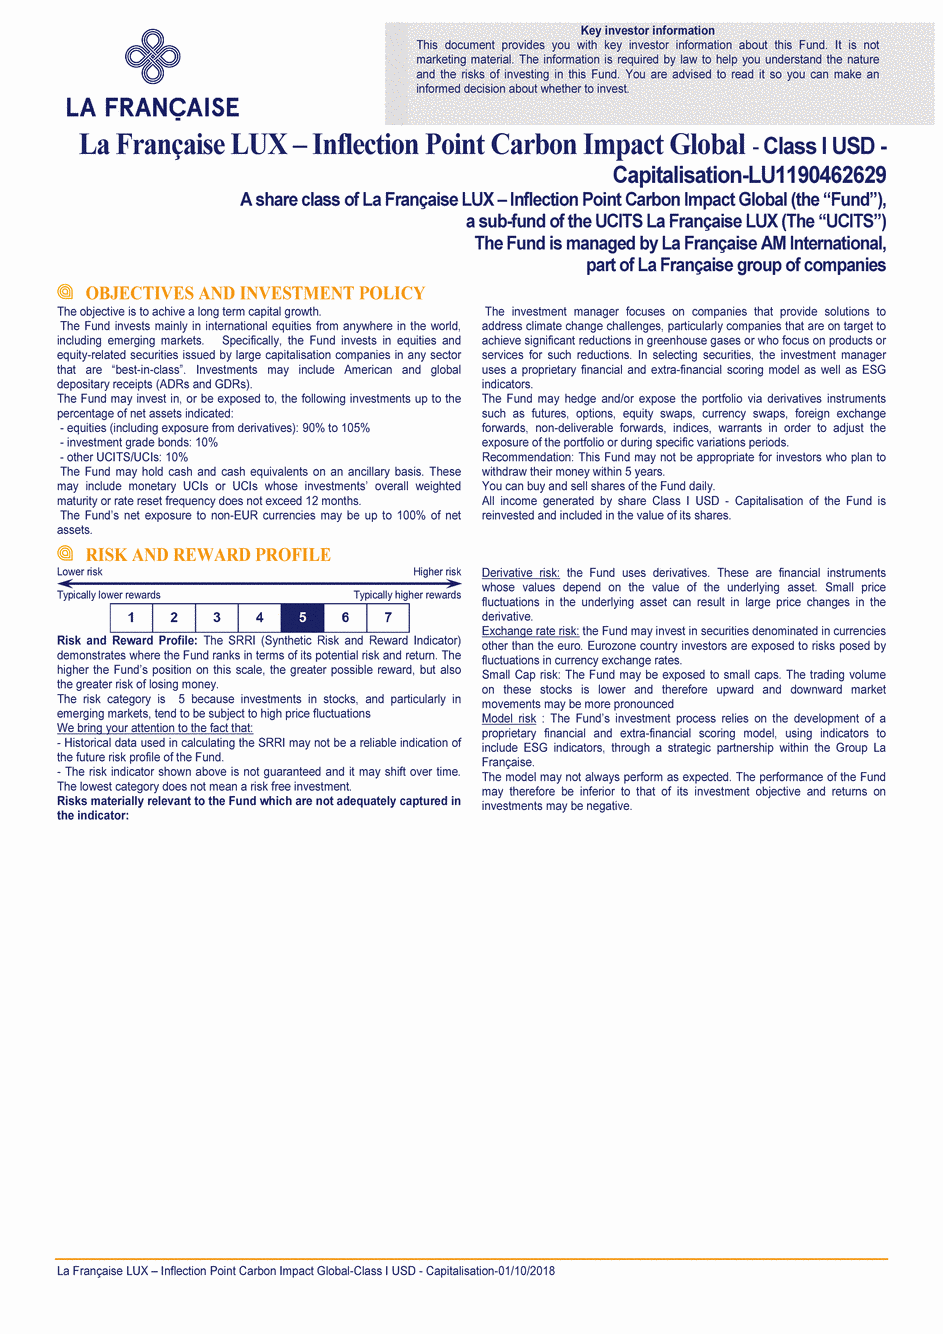 DICI La Française LUX - Inflection Point Carbon Impact Global - Class I USD - 01/10/2018 - Anglais